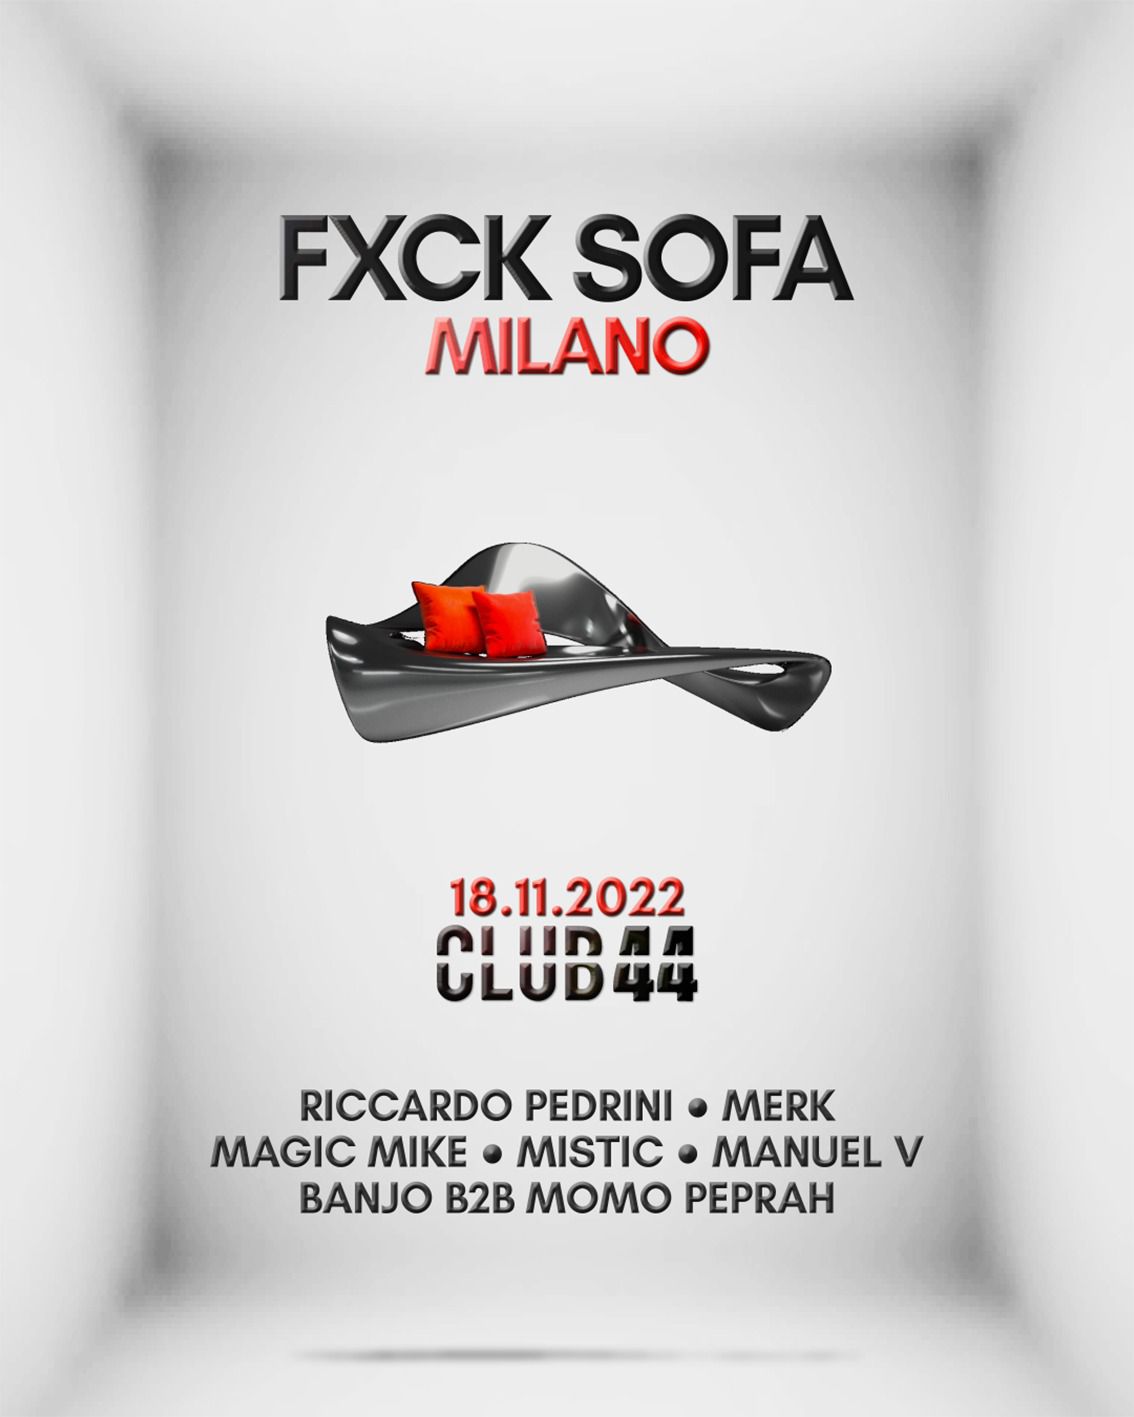 FXCK SOFA Milano